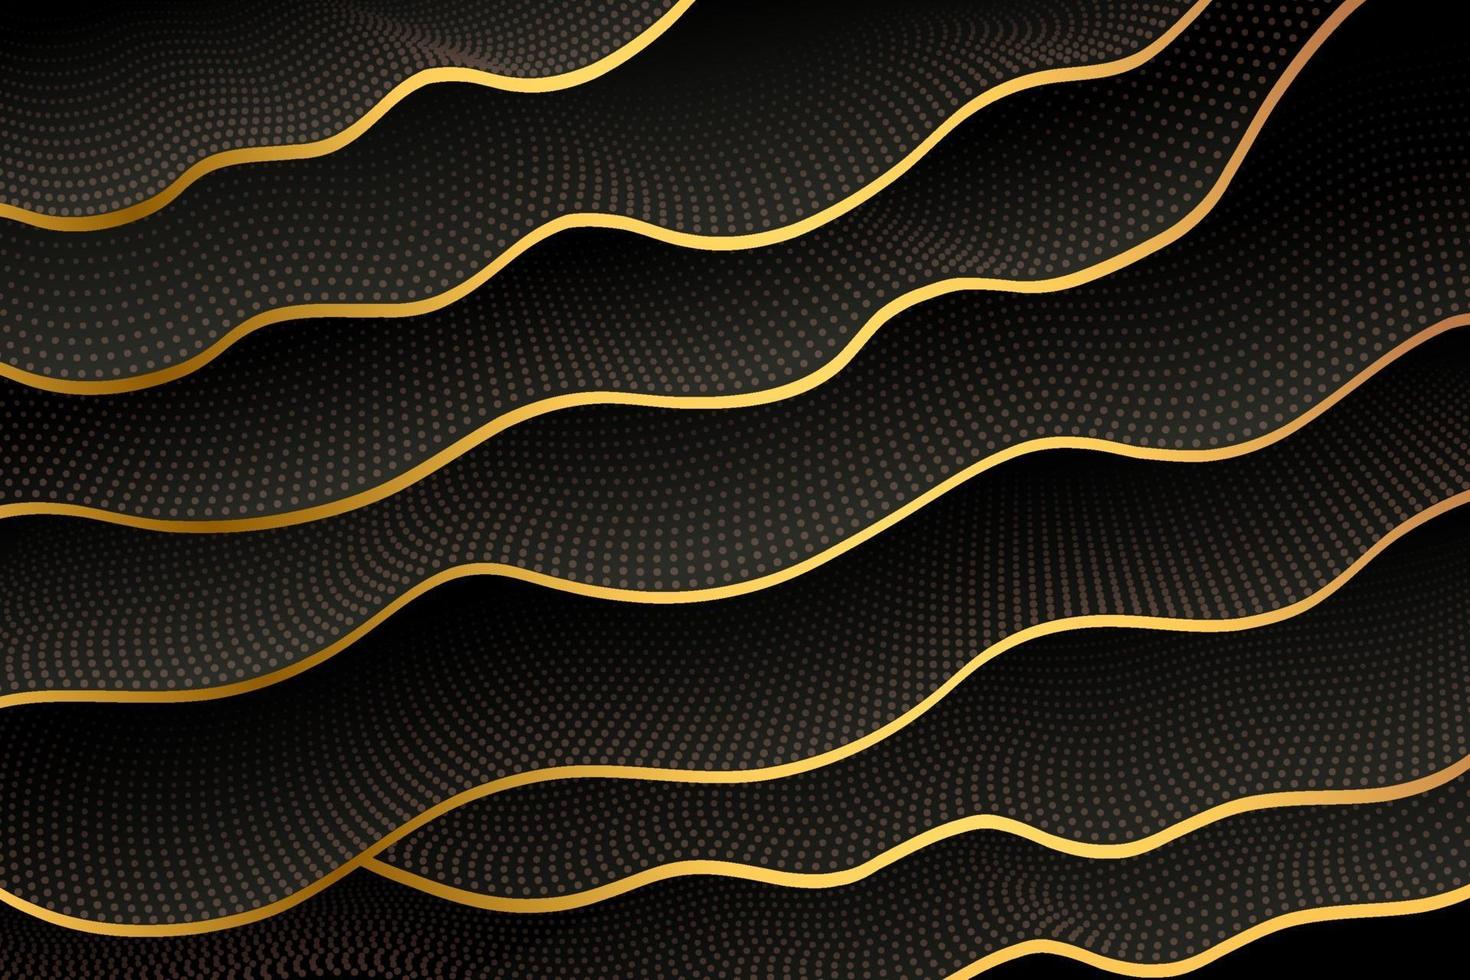 fließende wellenförmige geschichtete form mit goldenem rand und glitzer-halbton. abstrakter Vektor schwarz und gold auf dunklem Hintergrund. goldene Explosion von Konfetti. luxuriös und elegant. Vektor-Illustration